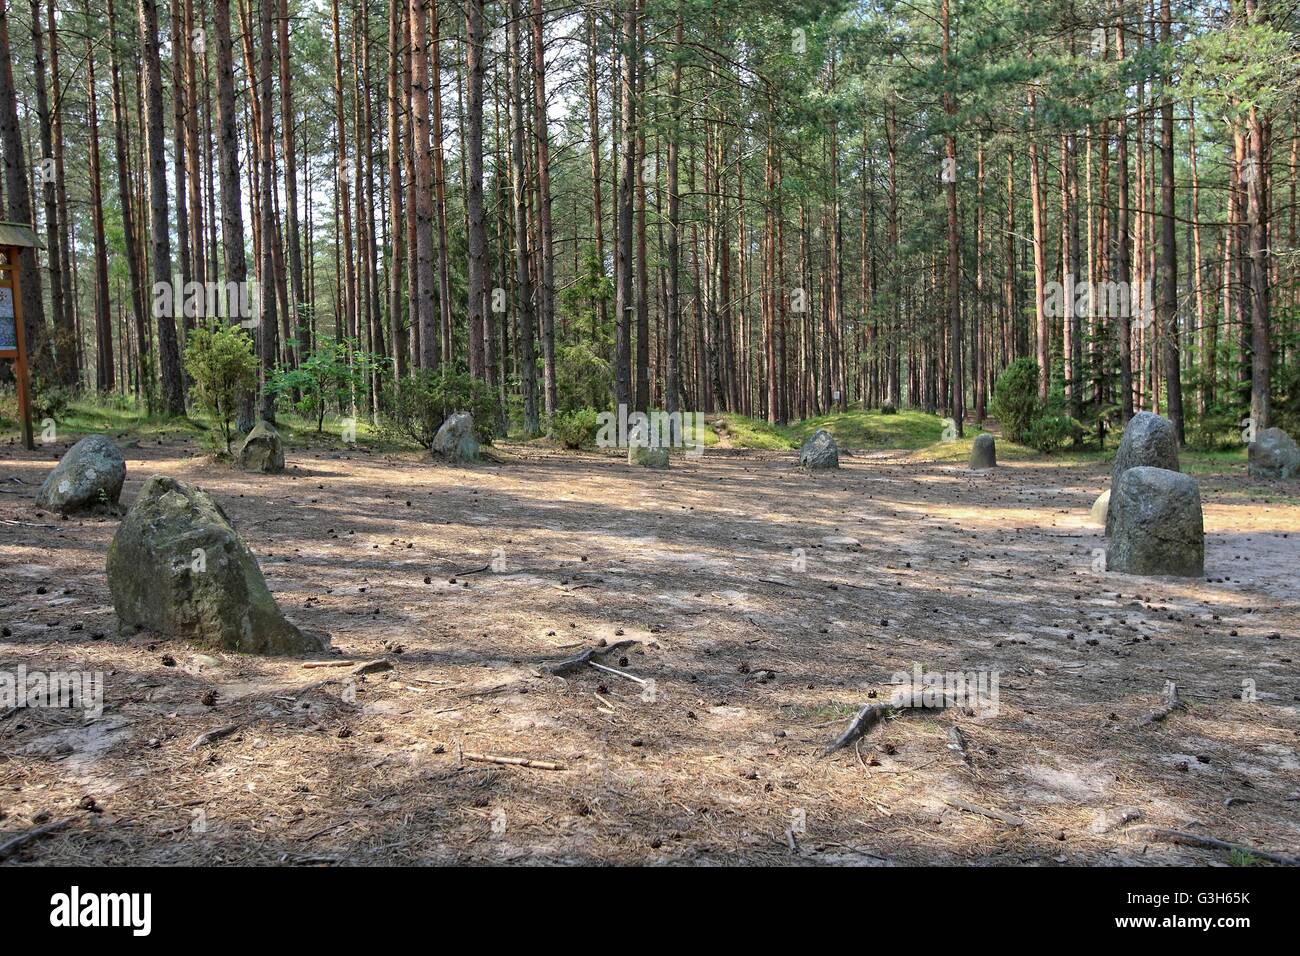 Wesiory, Pologne 25 avril, juin 2016 Très chaud et ensoleillé en Pologne. La température atteint 35 degrés Celsius. Les visites de personnes Wesiory cercles de pierres mégalithiques de cacher à l'ombre des arbres. Cercles de pierres mégalithiques Wesiory et lieux de sépulture sont cacher profondément dans la forêt. Ce lieu a été créé par les goths probablement dans la 1re à la 3e siècle. Il y a trois cercles de pierre et une partie de la quatrième et 20 des castrats. Le diamètre du plus grand cercle est de 26 mètres et est prévue avec des pierres d'une hauteur d'environ 1,5 m. Au milieu il y a peu de stèles de pierre Crédit : Michal Fludra/Alamy Live News Banque D'Images